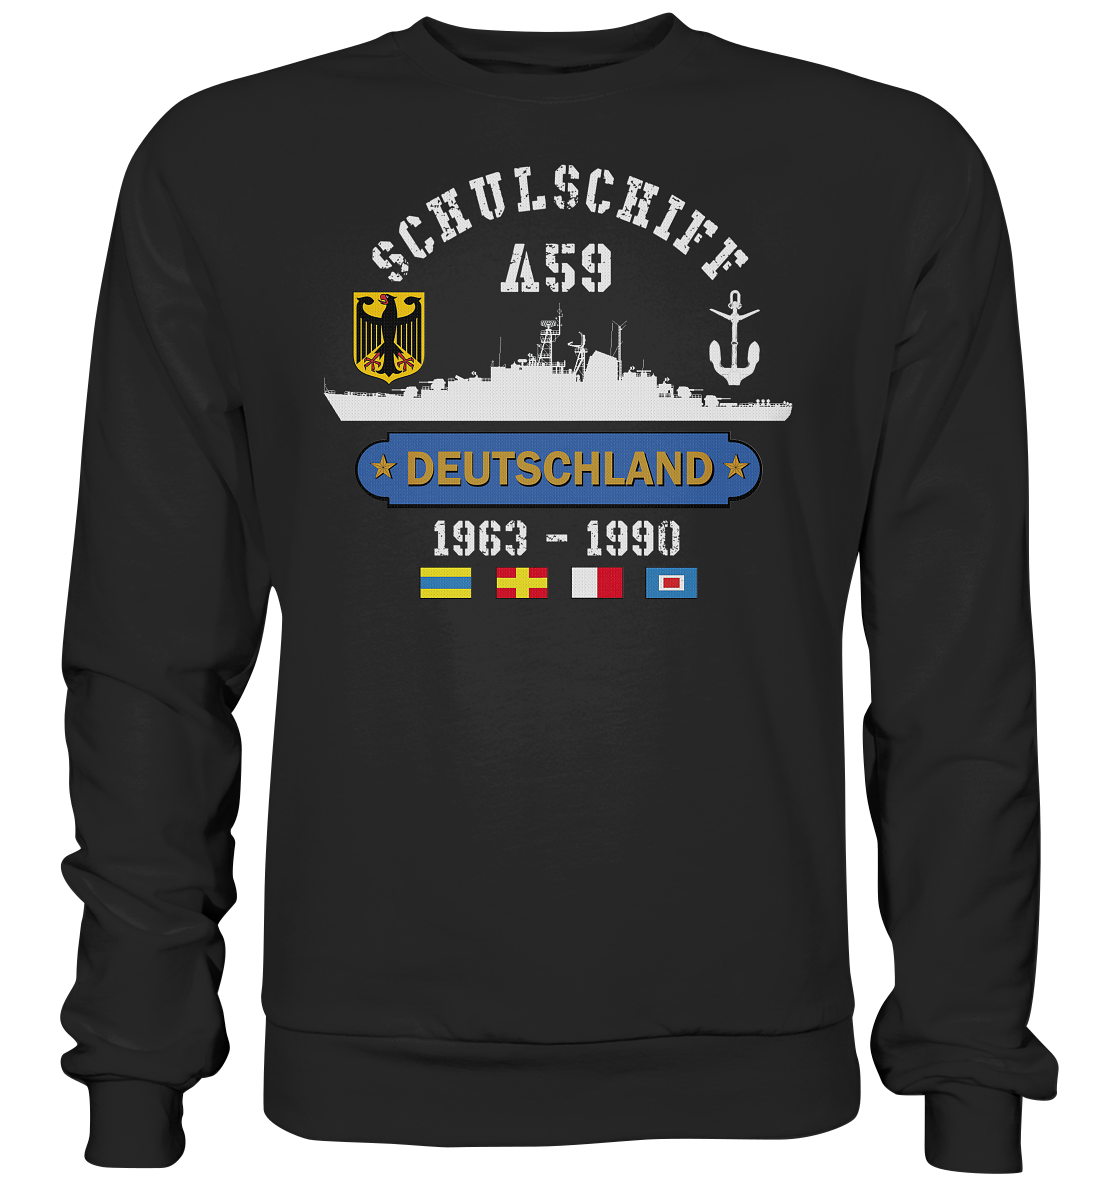 Schulschiff A59 DEUTSCHLAND - Premium Sweatshirt